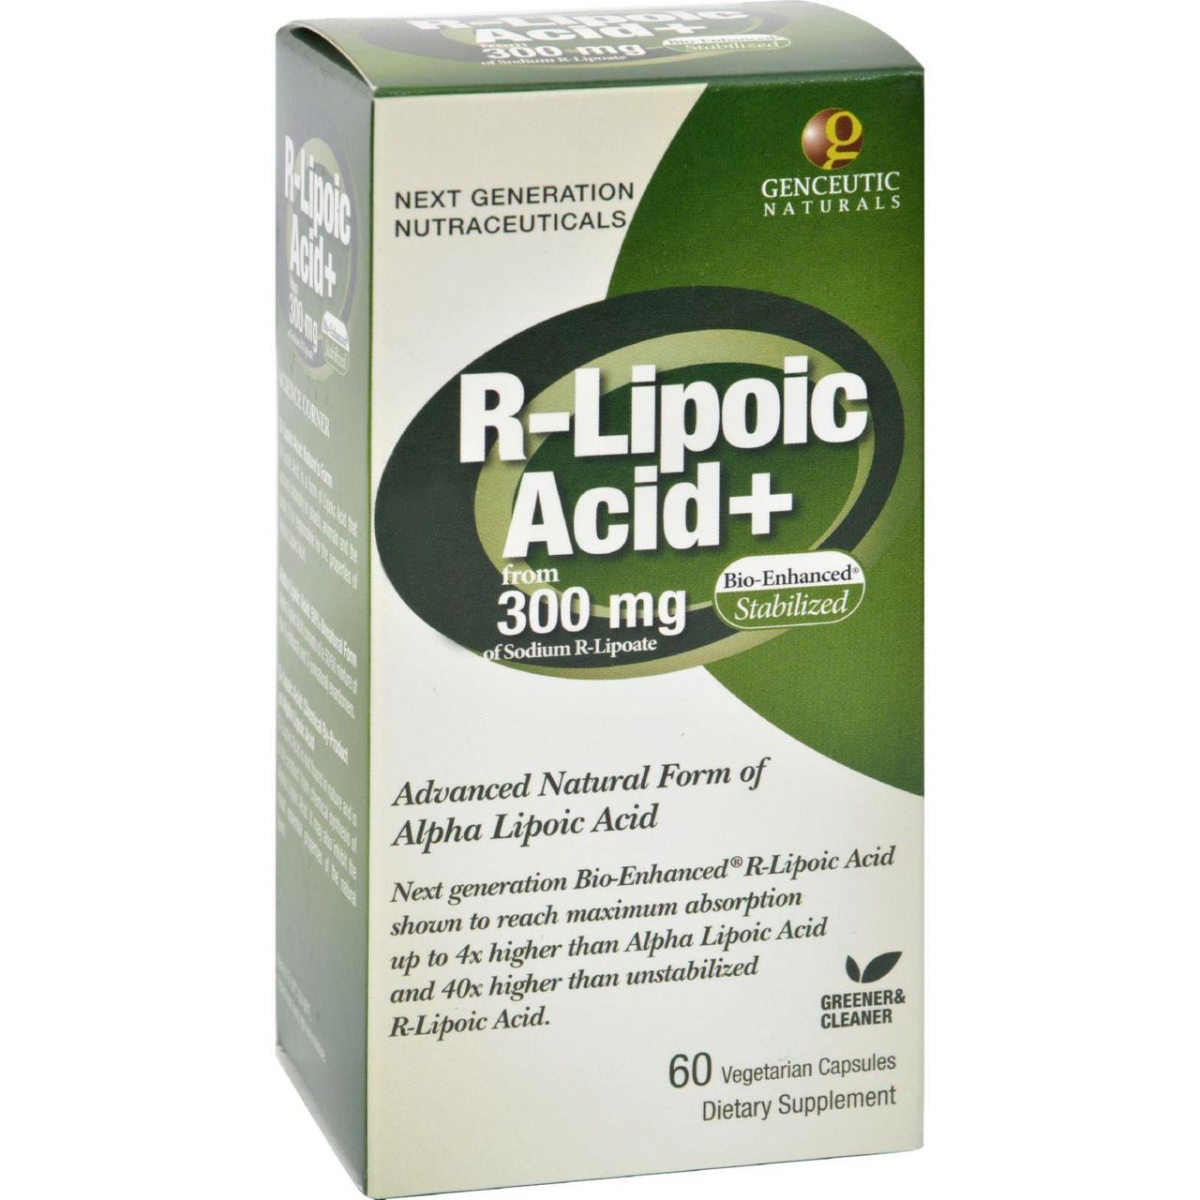 Hg0400408 300 Mg R-lipoic Acid Plus - 60 Vegetarian Capsules